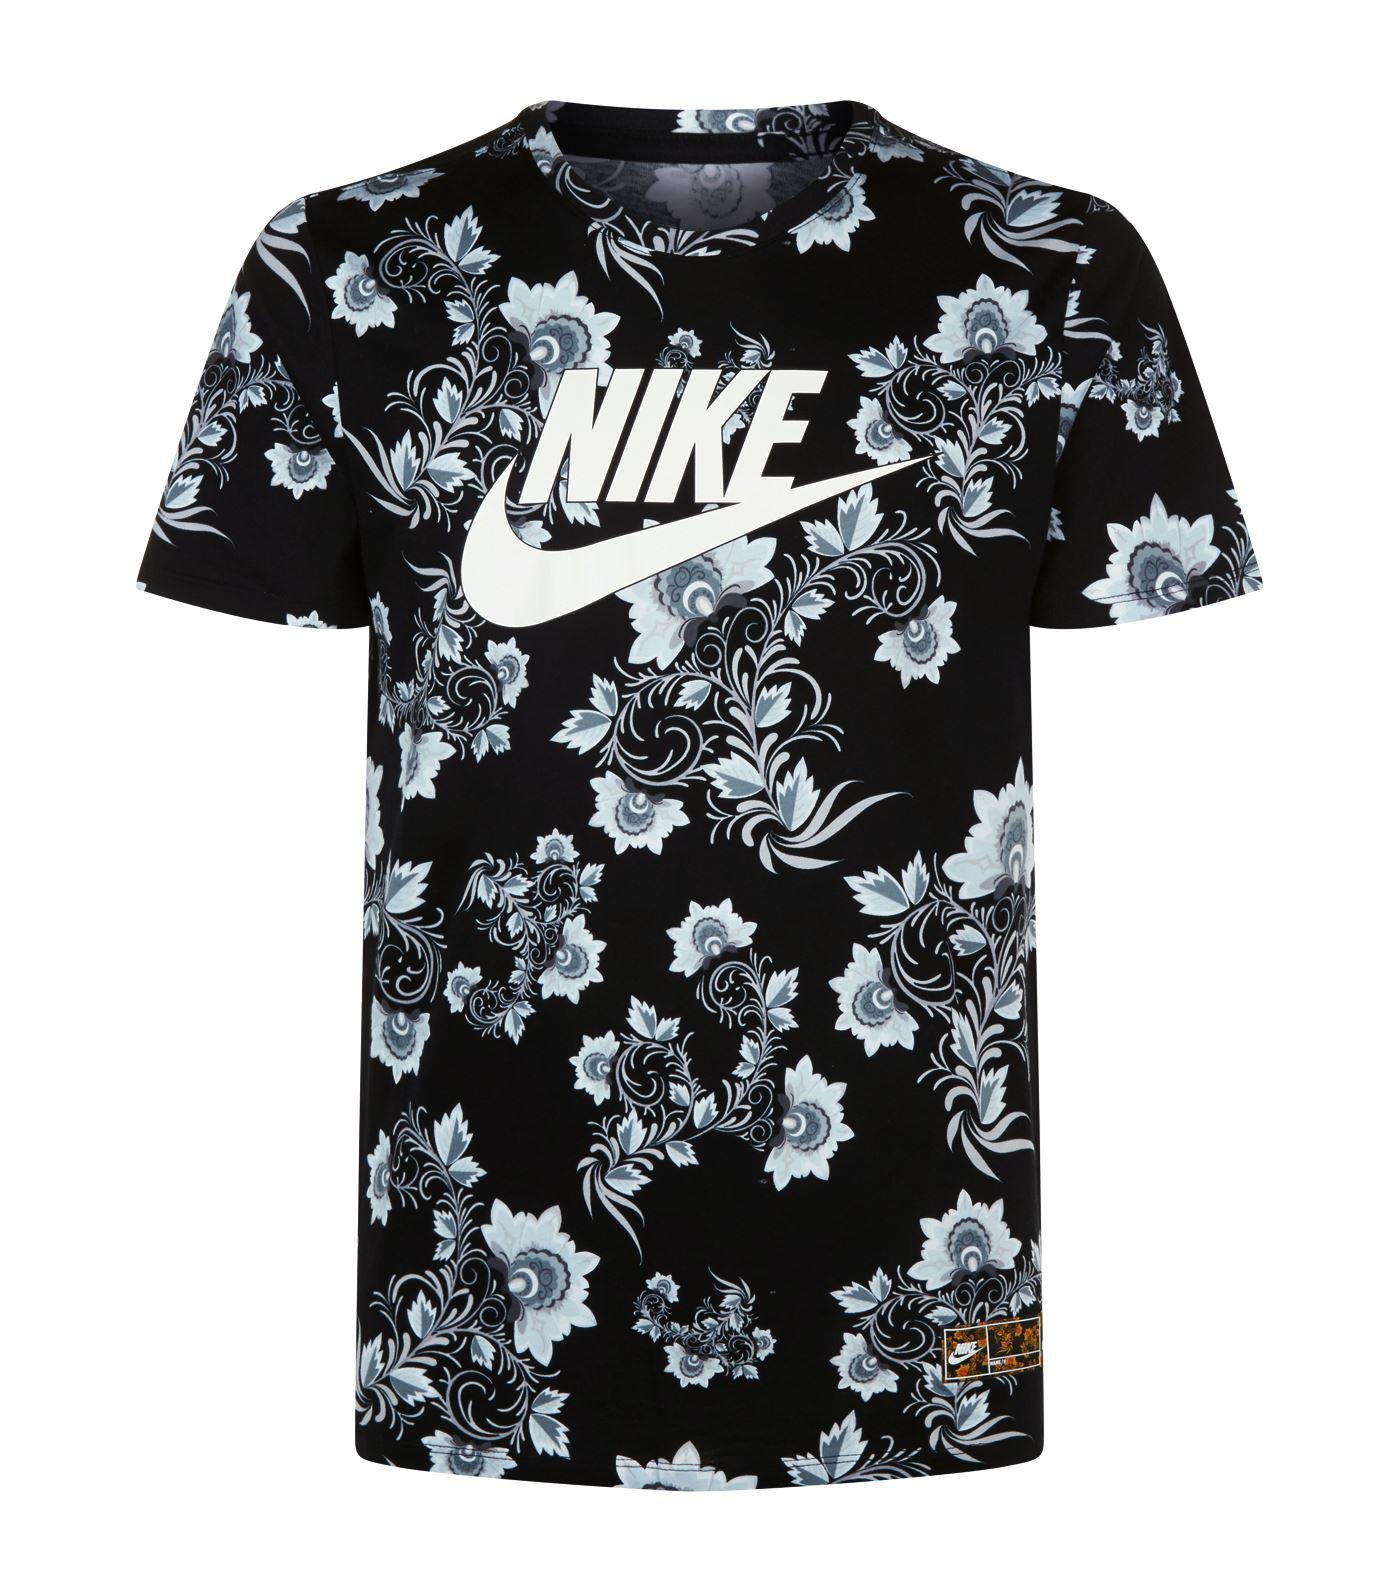 Eftermæle Katastrofe Sølv Nike Floral Print T-shirt, Black, M for Men | Lyst